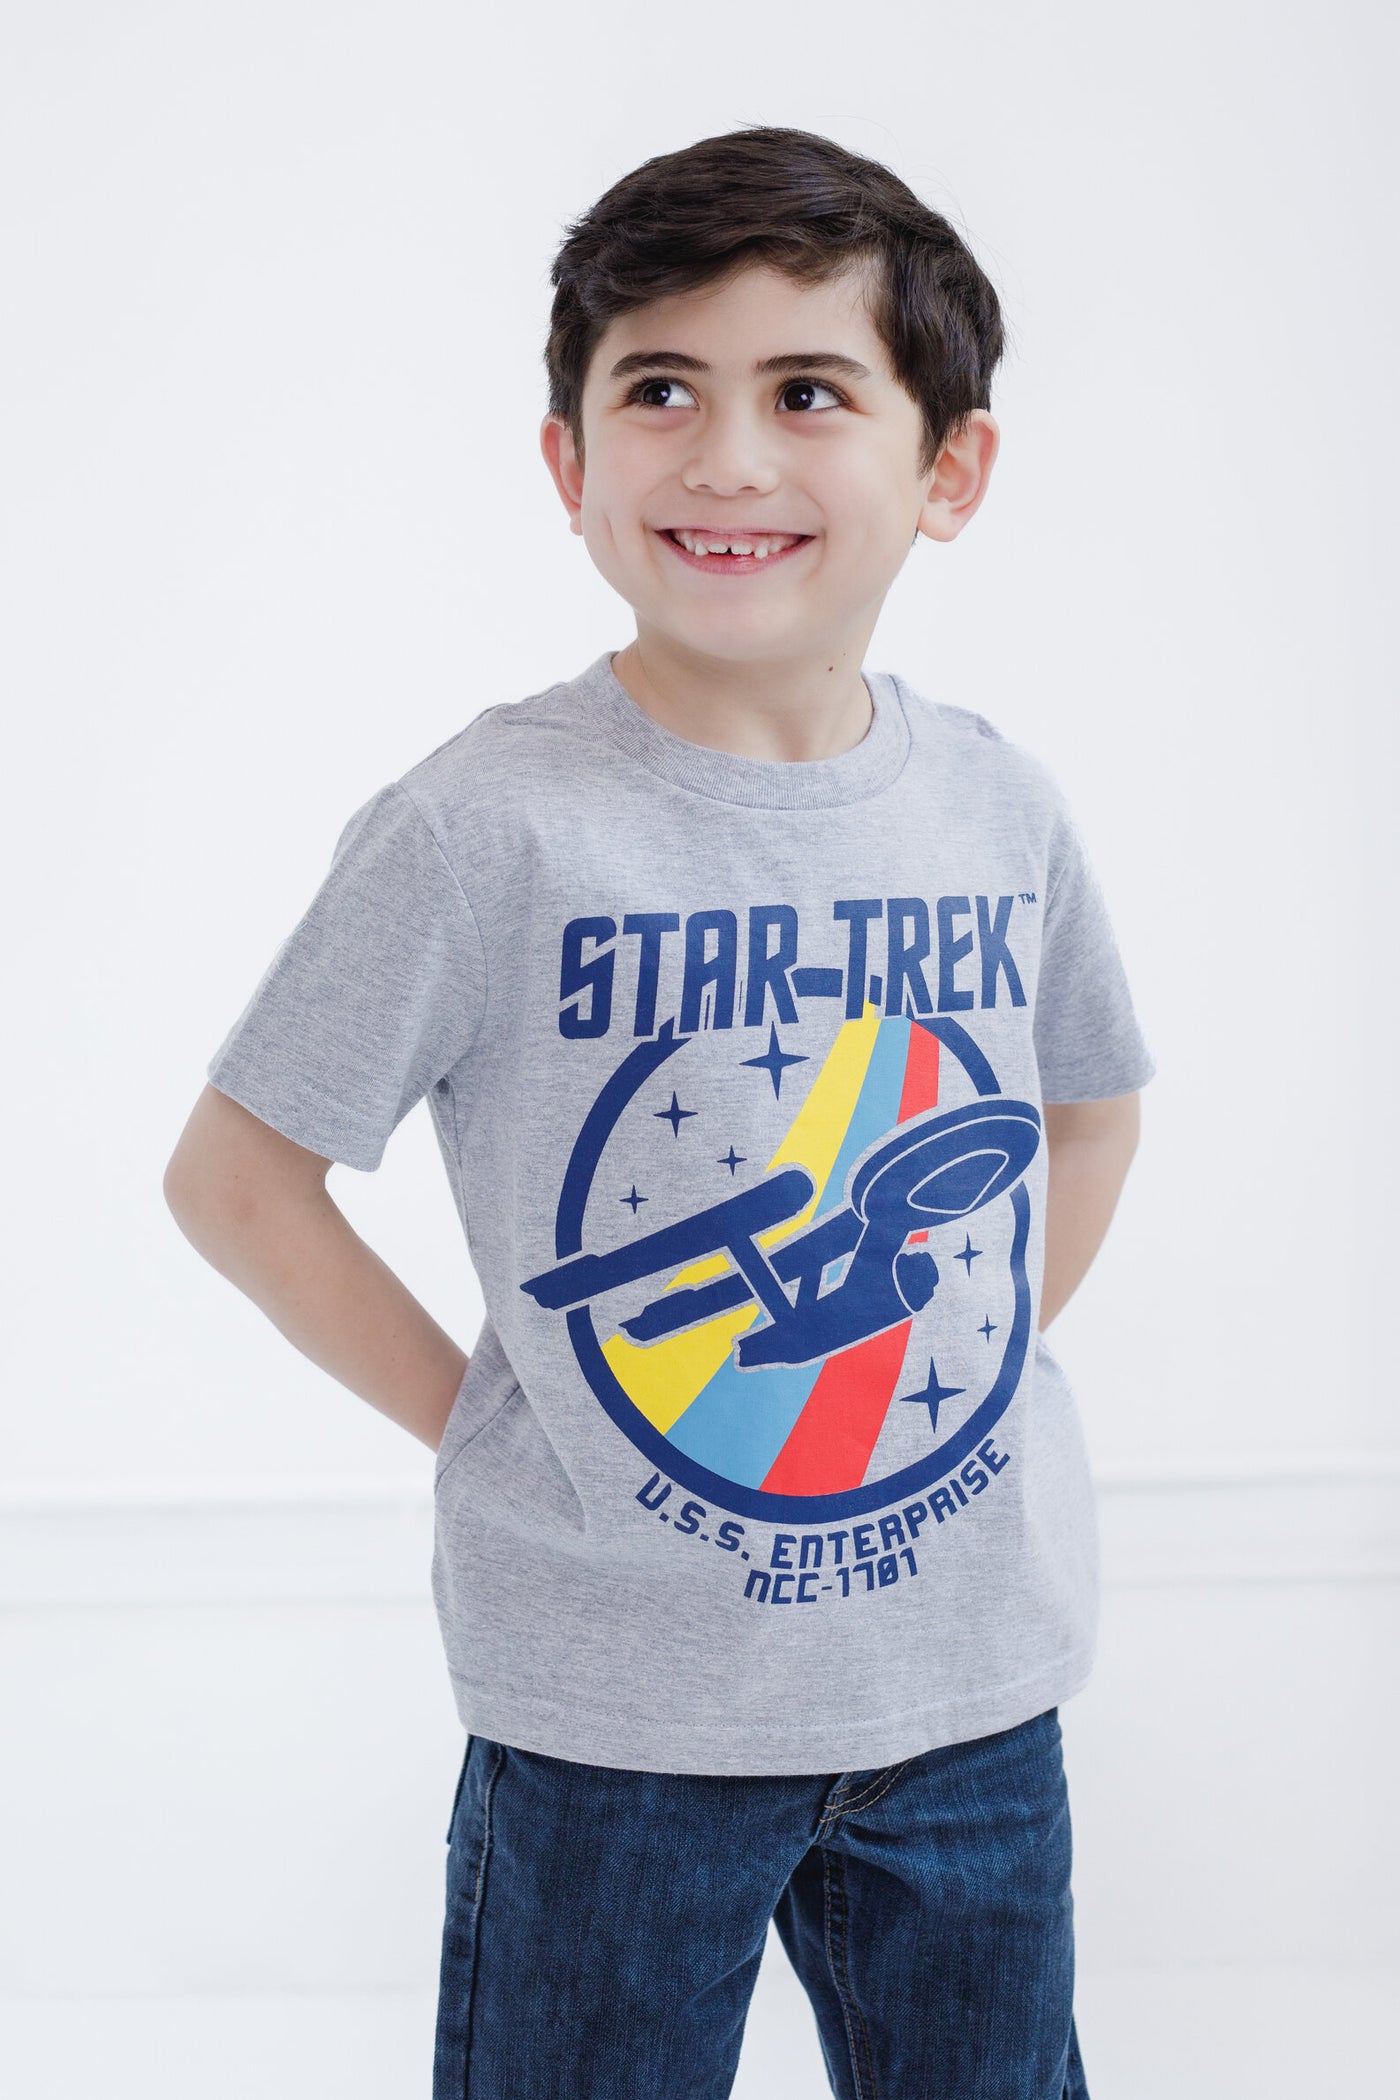 Star Trek 2 Pack T-Shirts